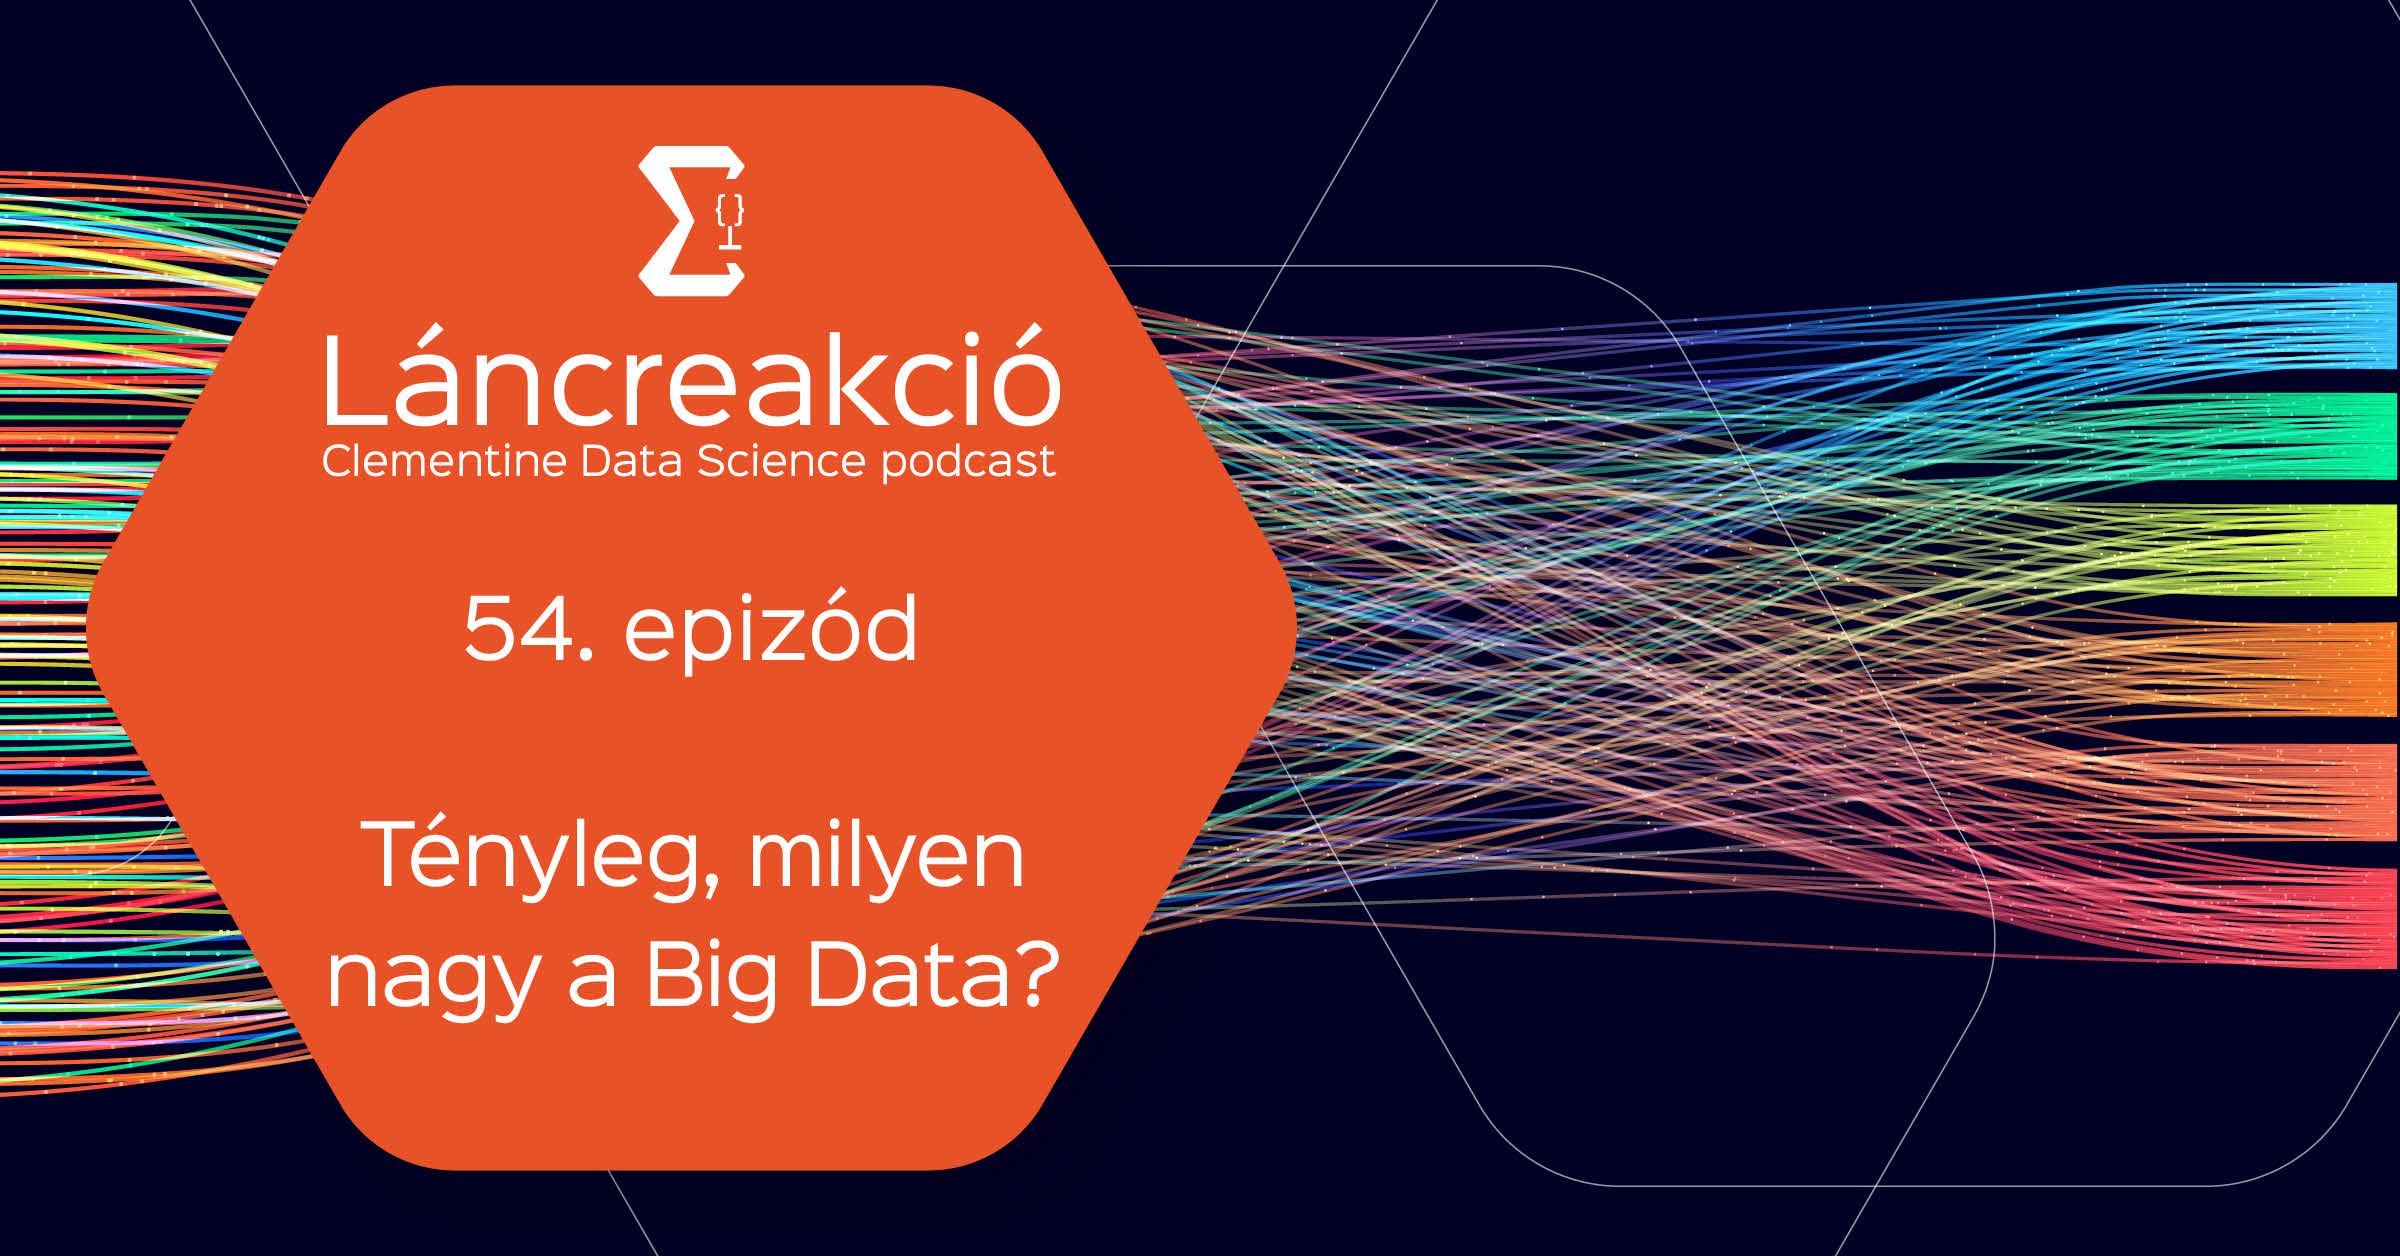 Tényleg, milyen nagy a Big Data?